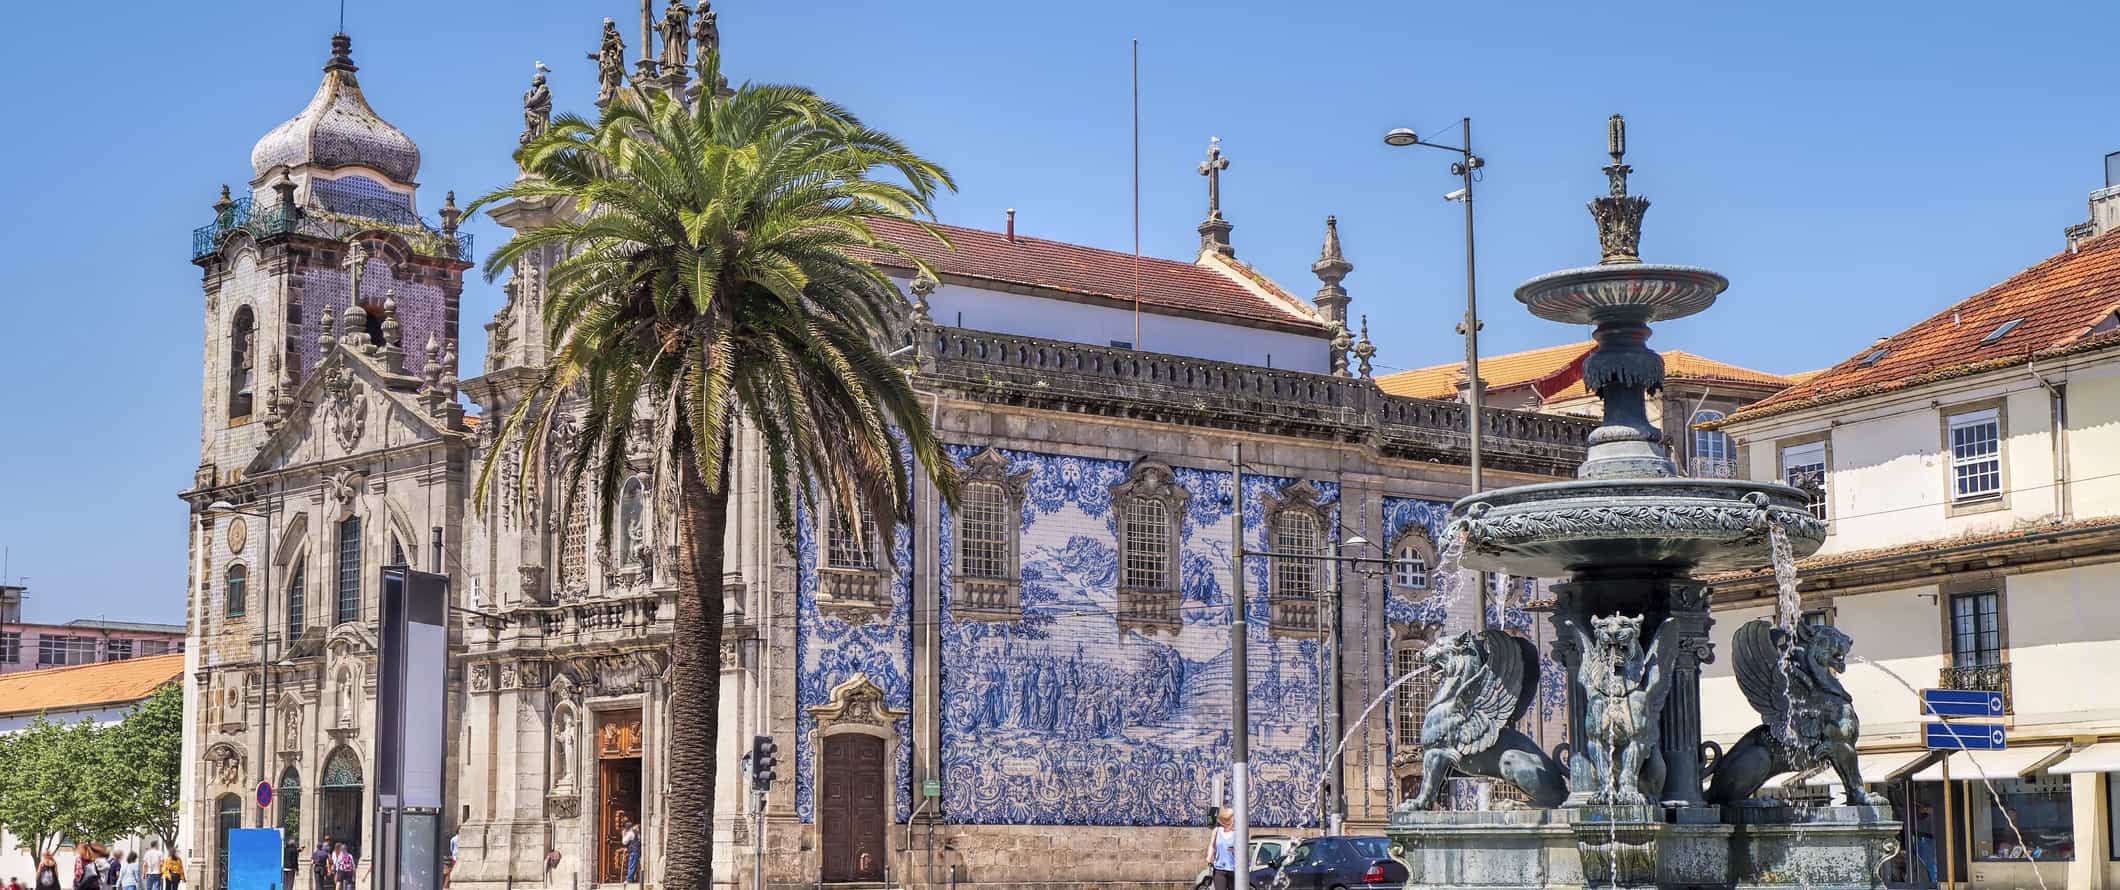 Igreja Cult no porto ensolarado, Portugal, com uma fonte em primeiro plano